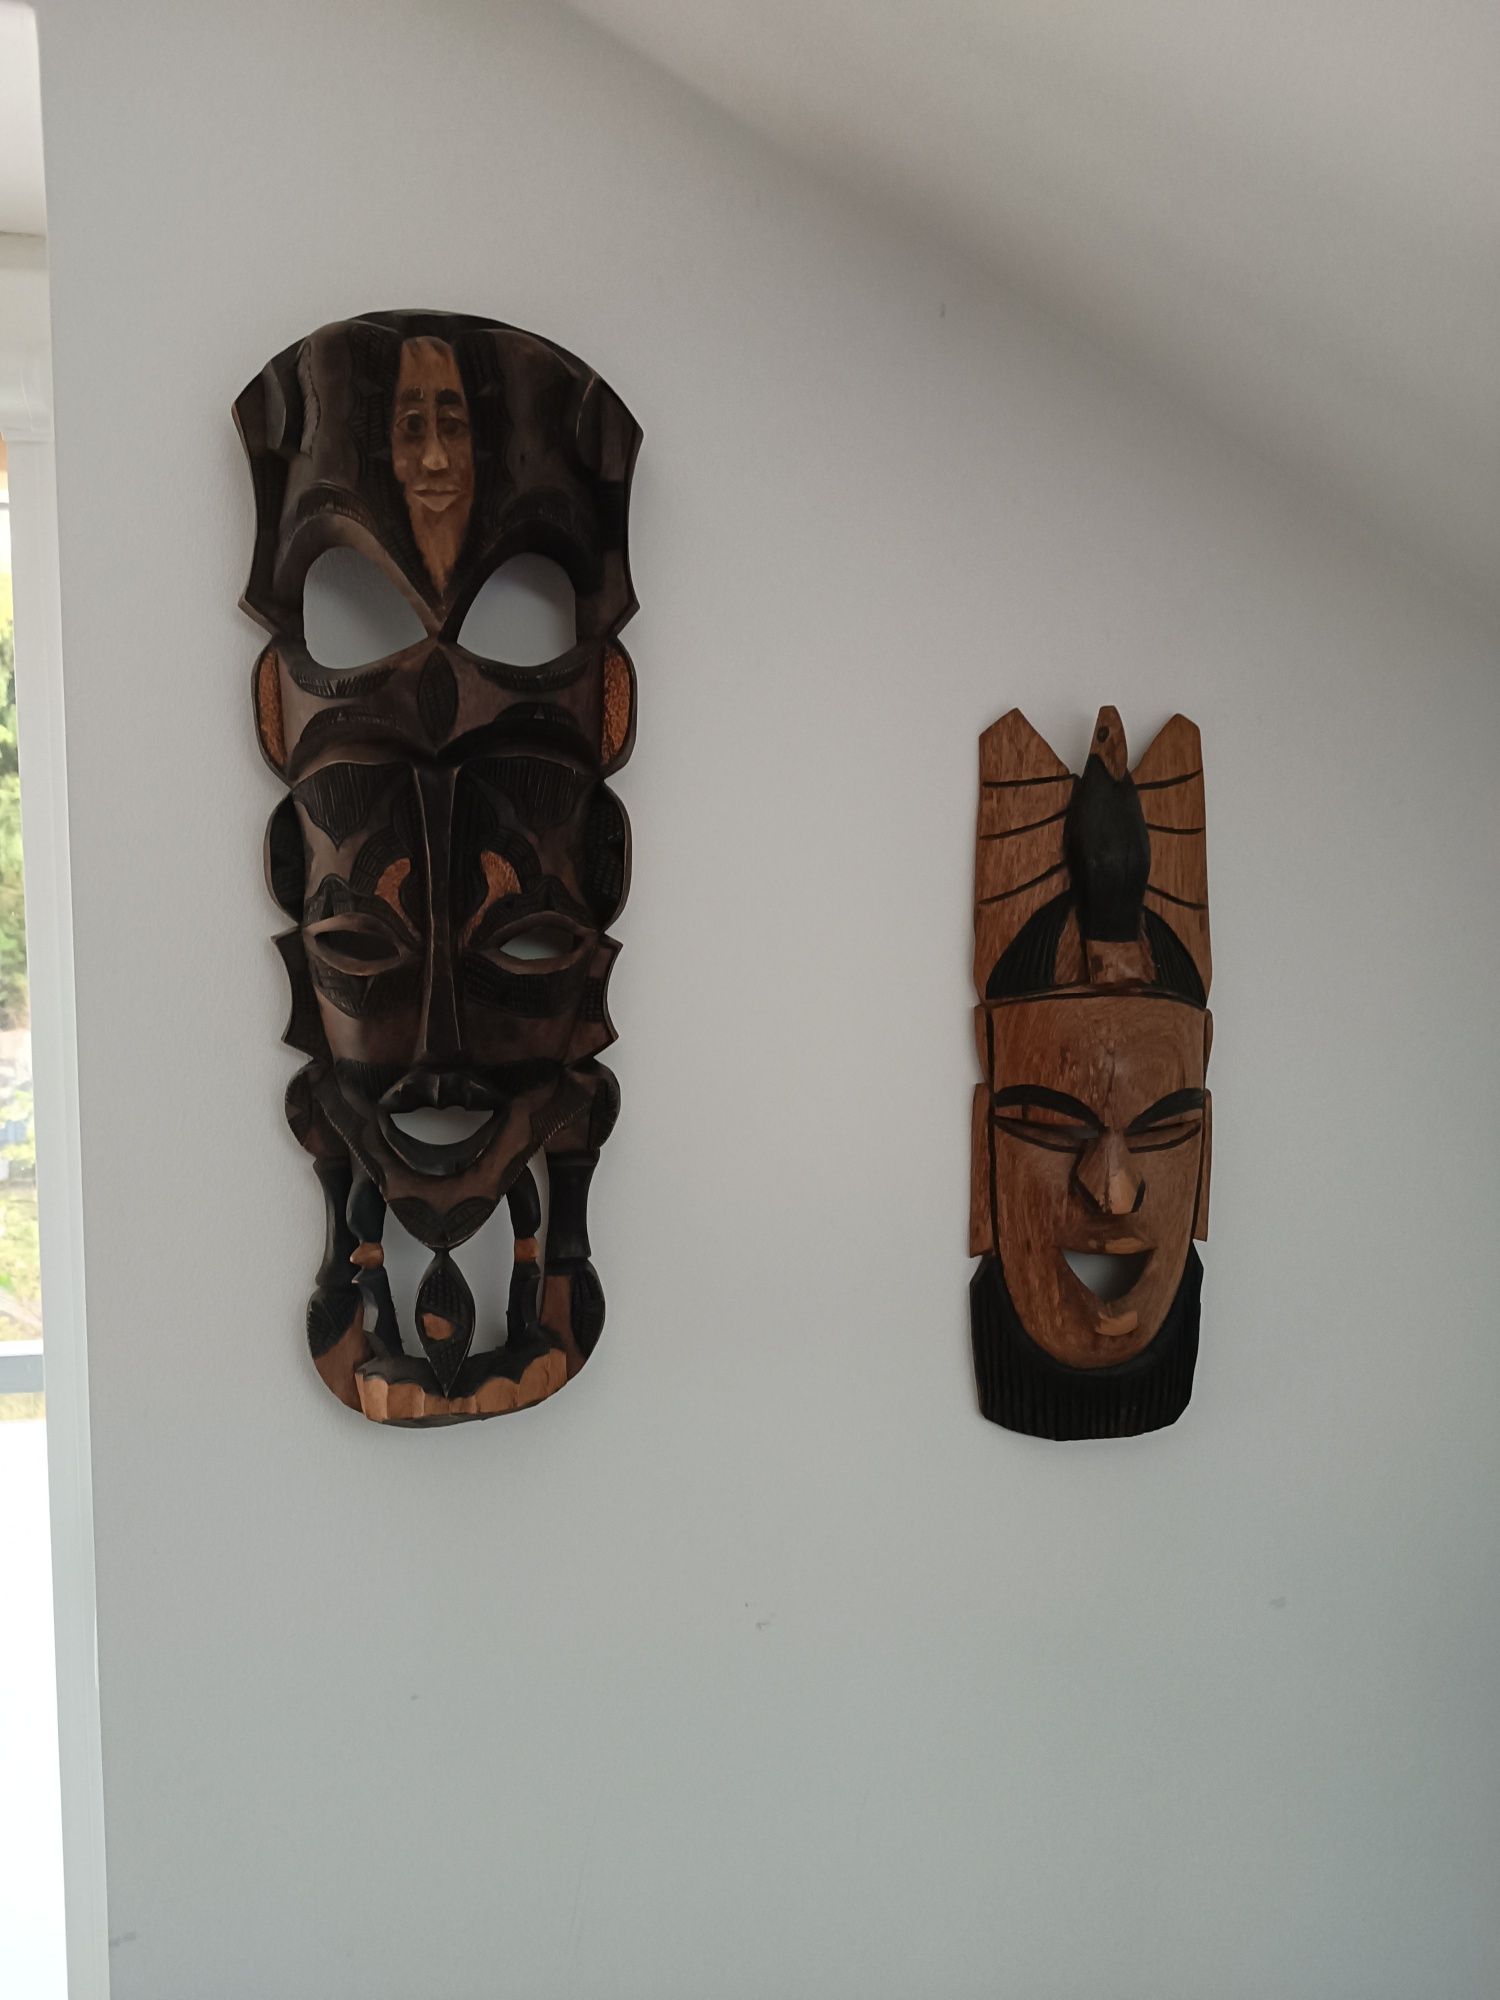 Maska afrykańska duża, 60 cm wysokości